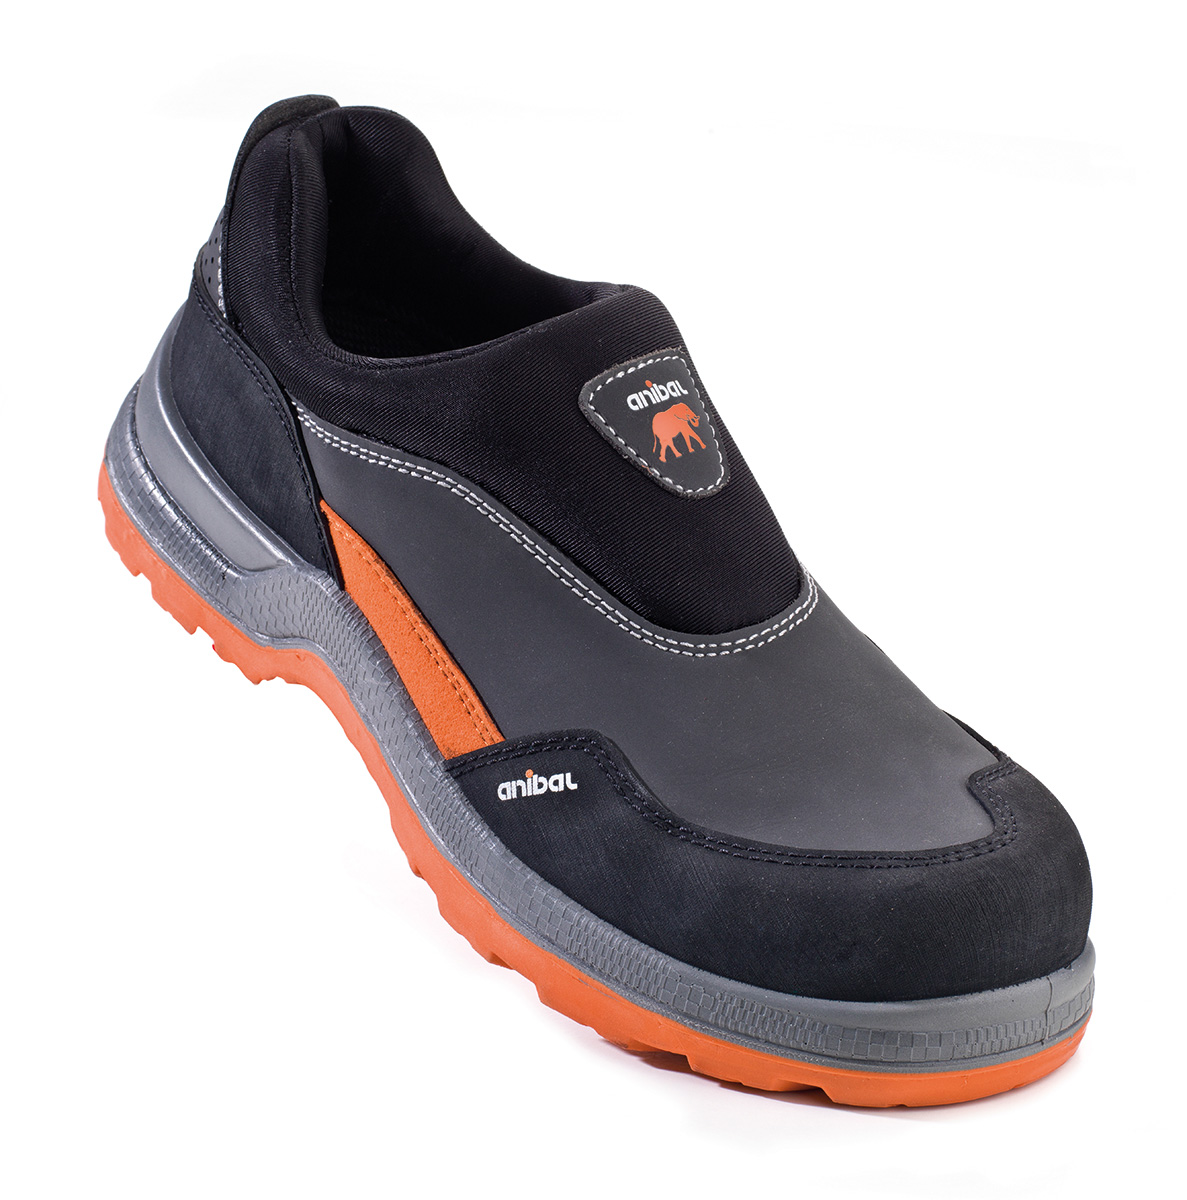 1688-ZA Calzado de Seguridad Sporty Zapato mod. “ATENAS”. Zapato tipo mocasín piel microfibra afelpada en S3. Suela de Poliuretano doble densidad SRC.